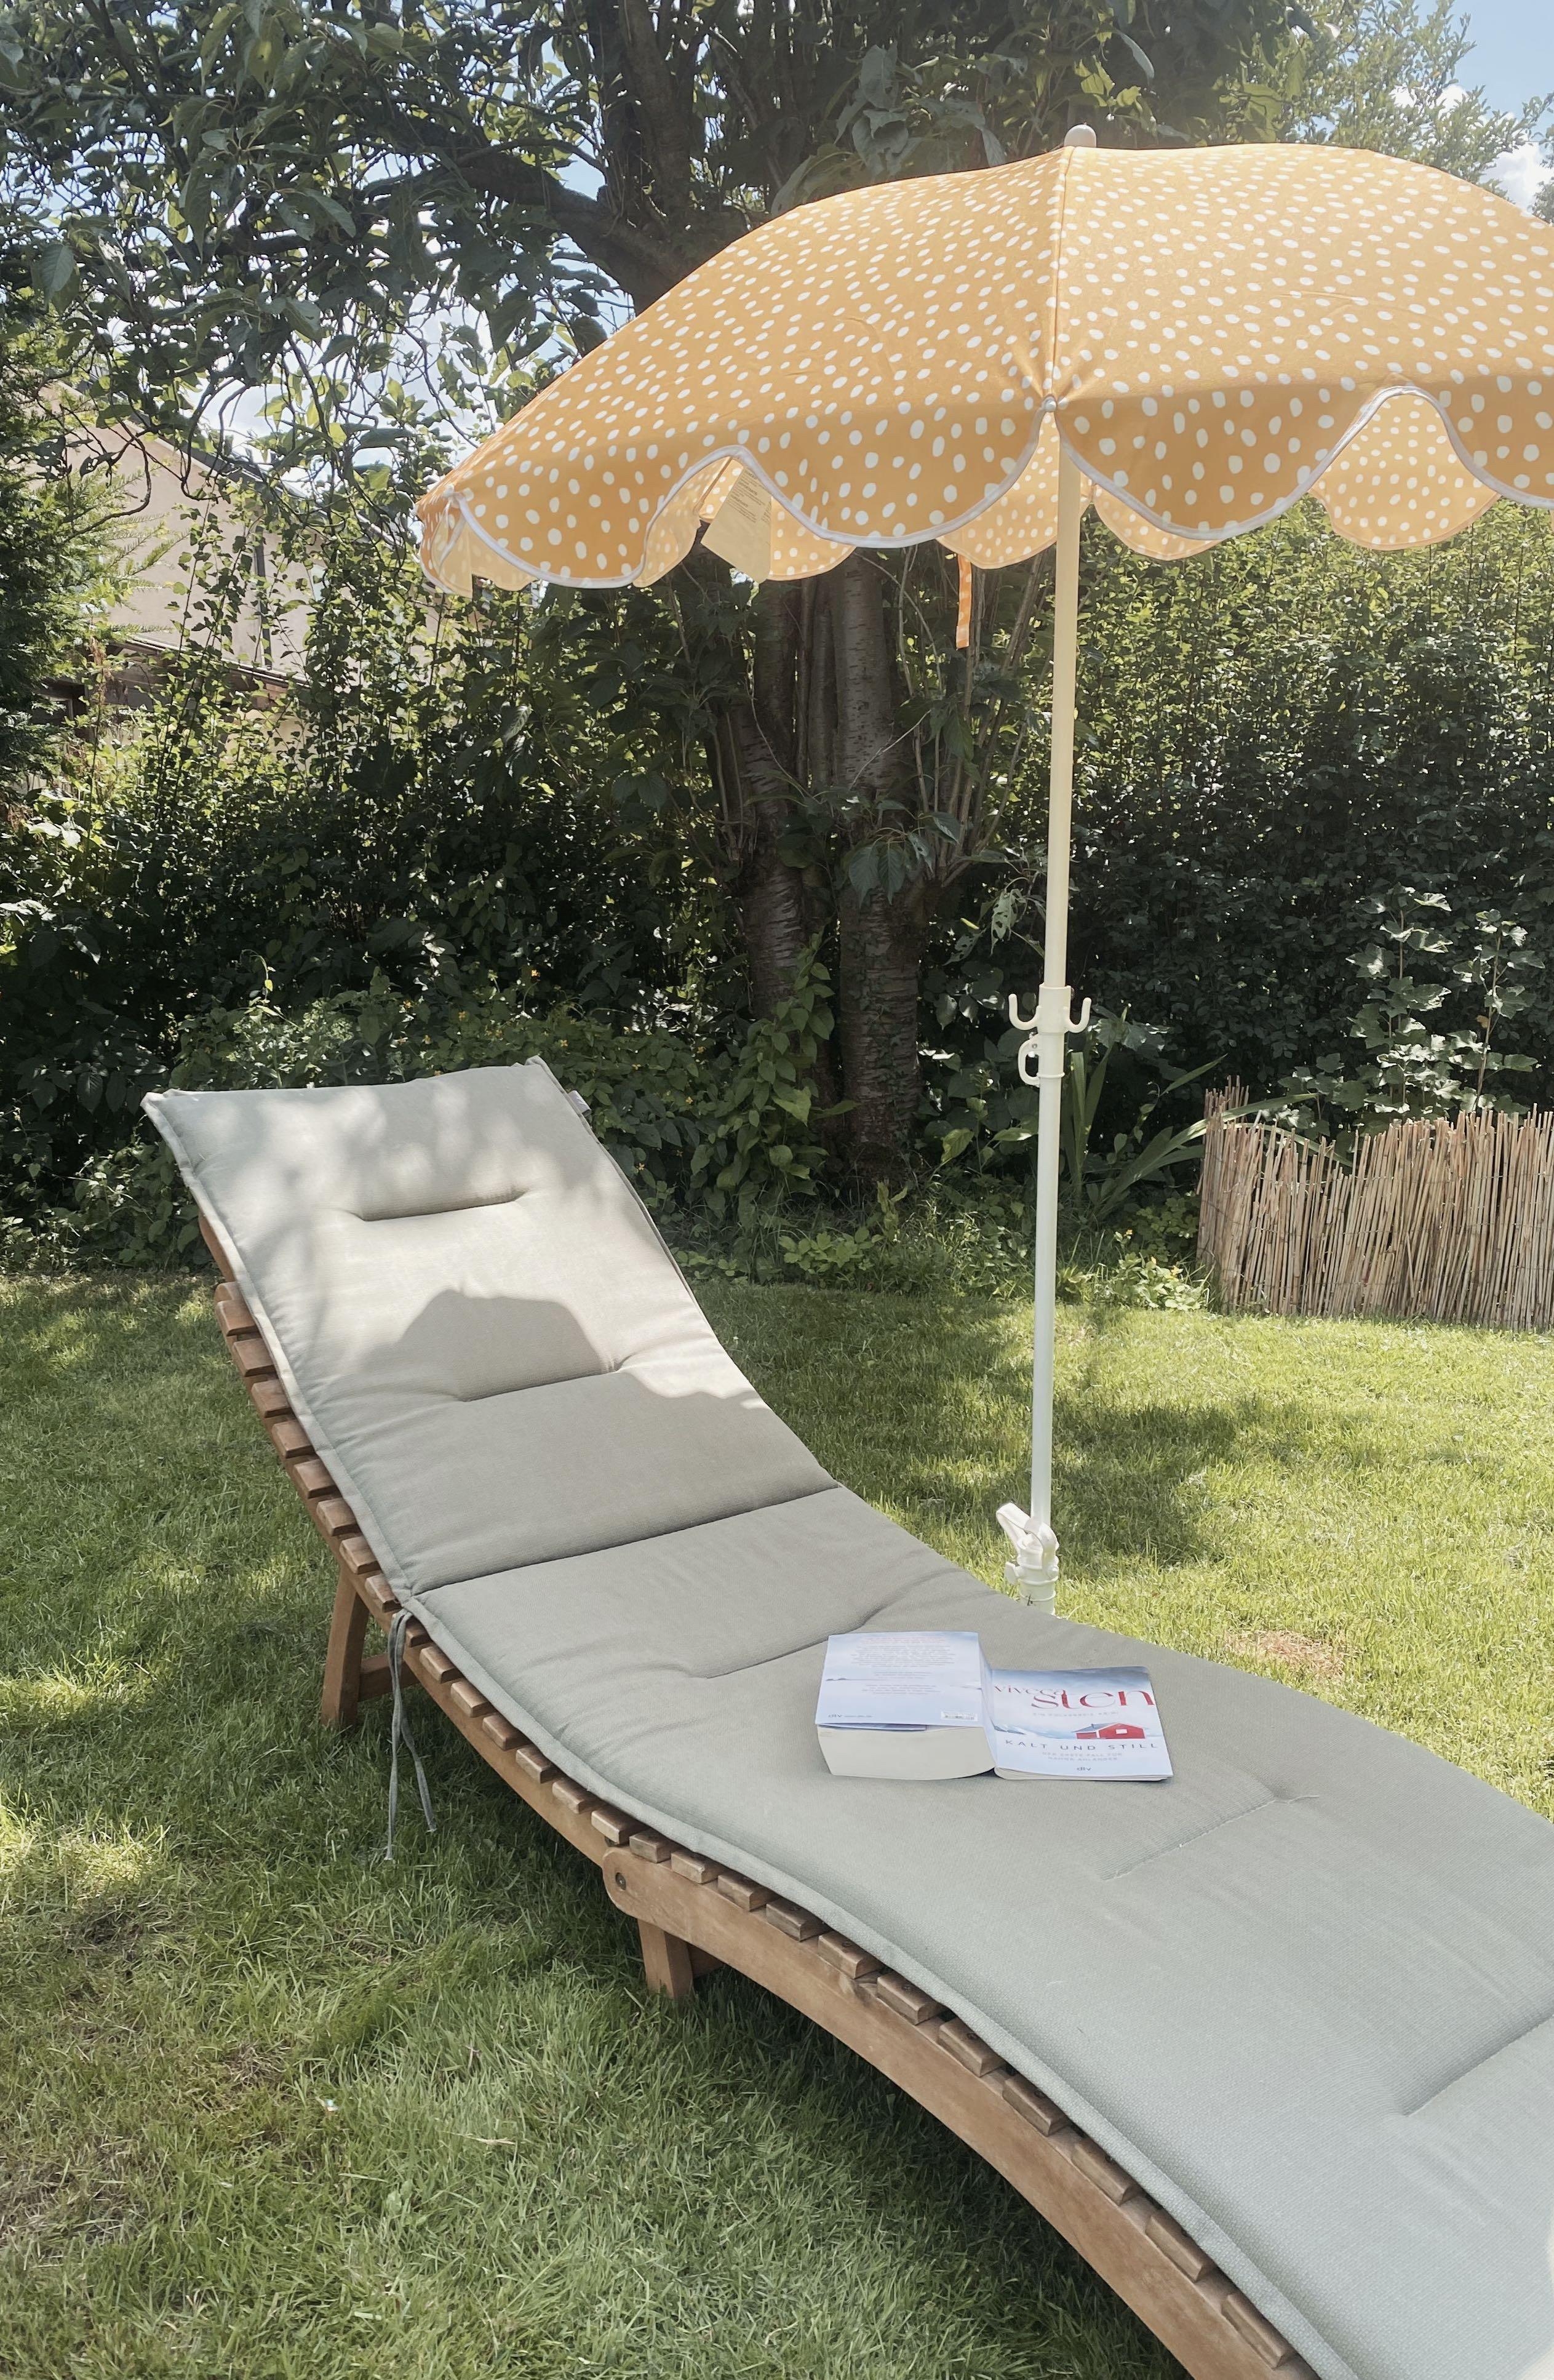 Time to relax...
#garten #sonnenschirm #relax #grünerleben #couchstyle #farbe #gelb #gartenmöbel #liege #sommer #lesen 